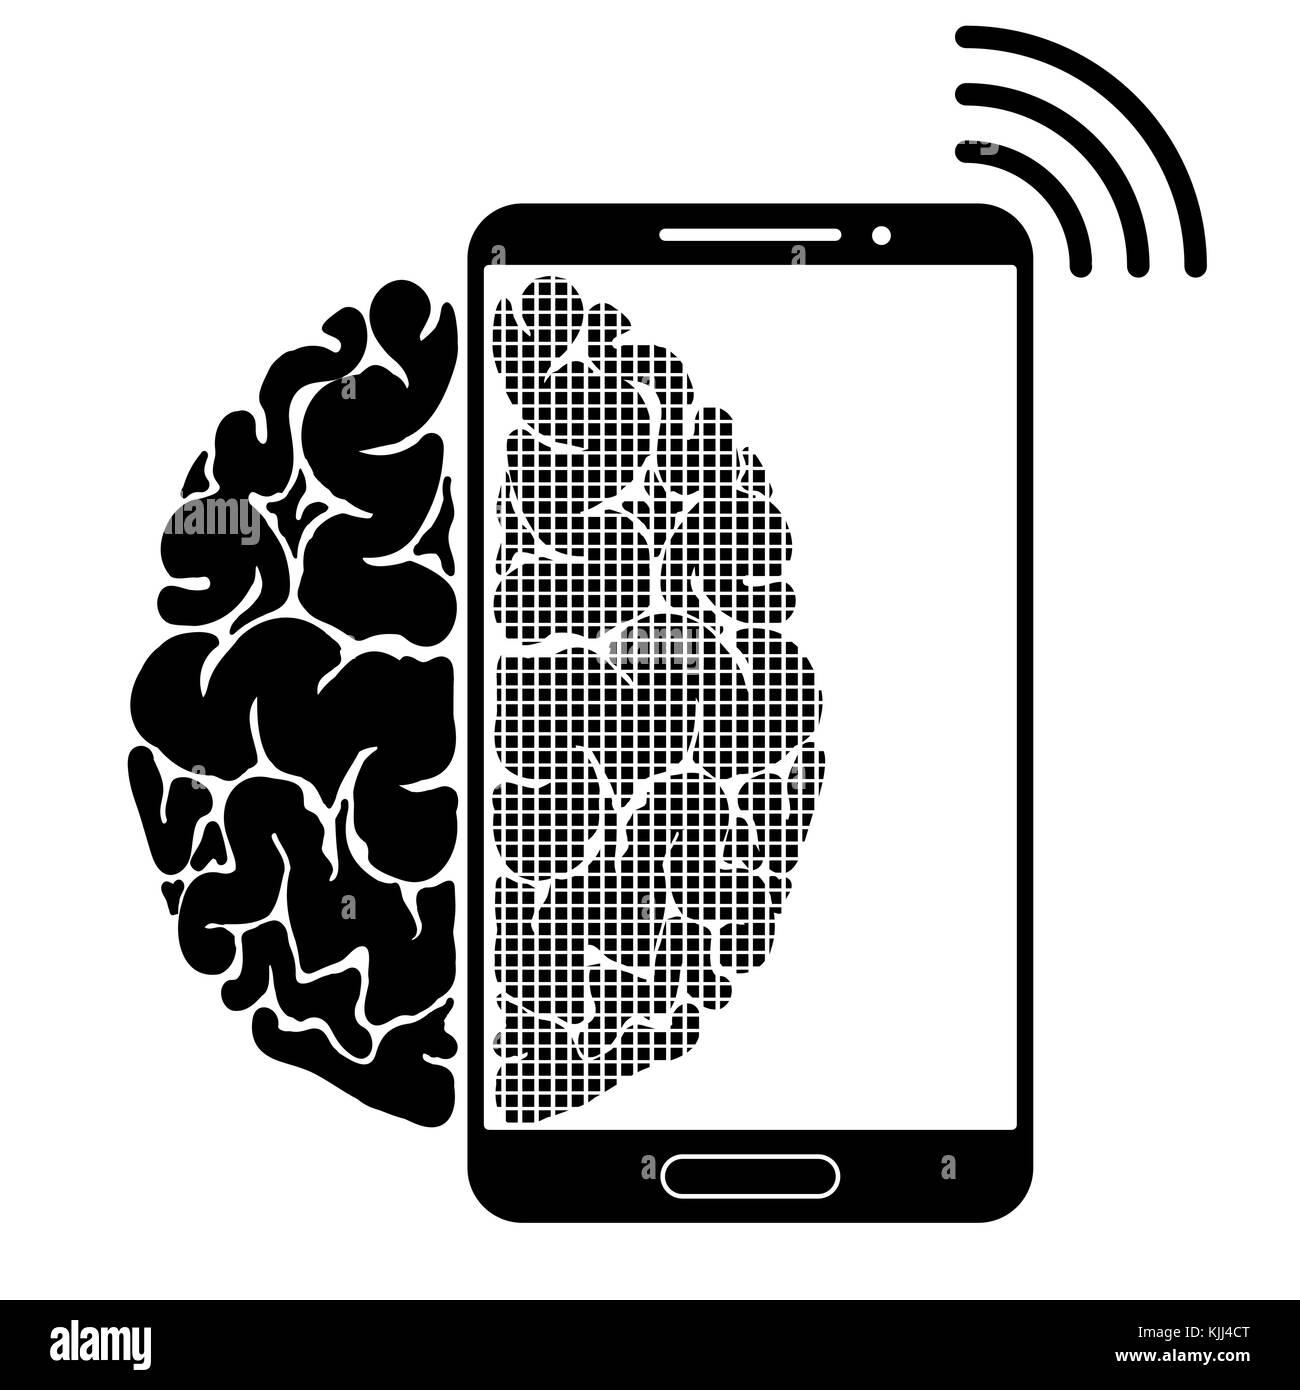 Eine konzeptionelle Zeichen oder das Logo zeigt eine Person s Abhängigkeit auf einem Smartphone, Gadget oder das Internet. starke Kommunikation des Gehirns und neue Technologien. Stock Vektor